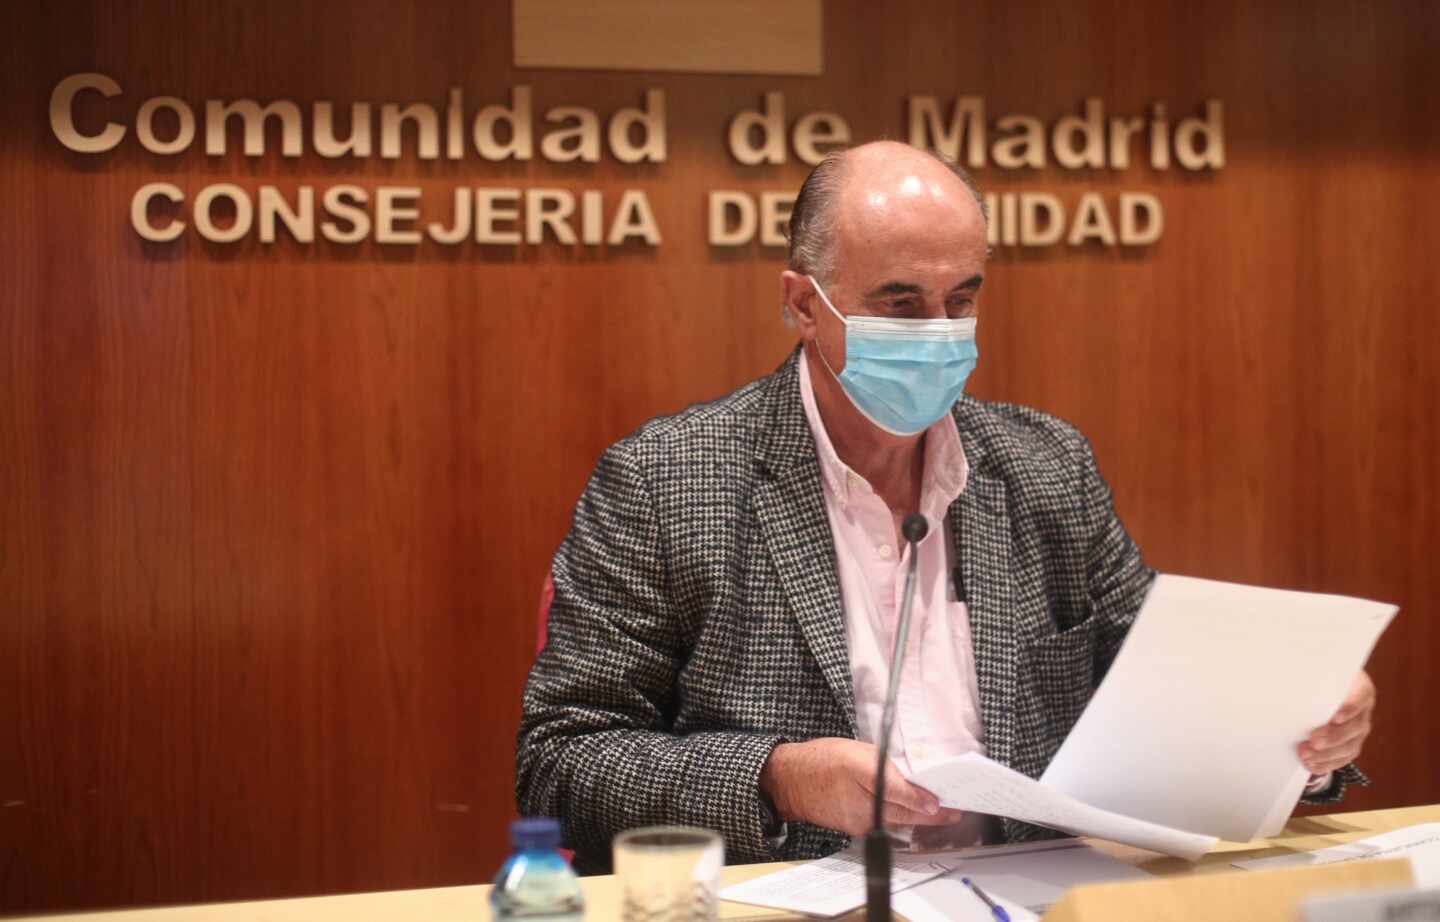 Salud de Madrid informa sobre la situación de la pandemia en la región